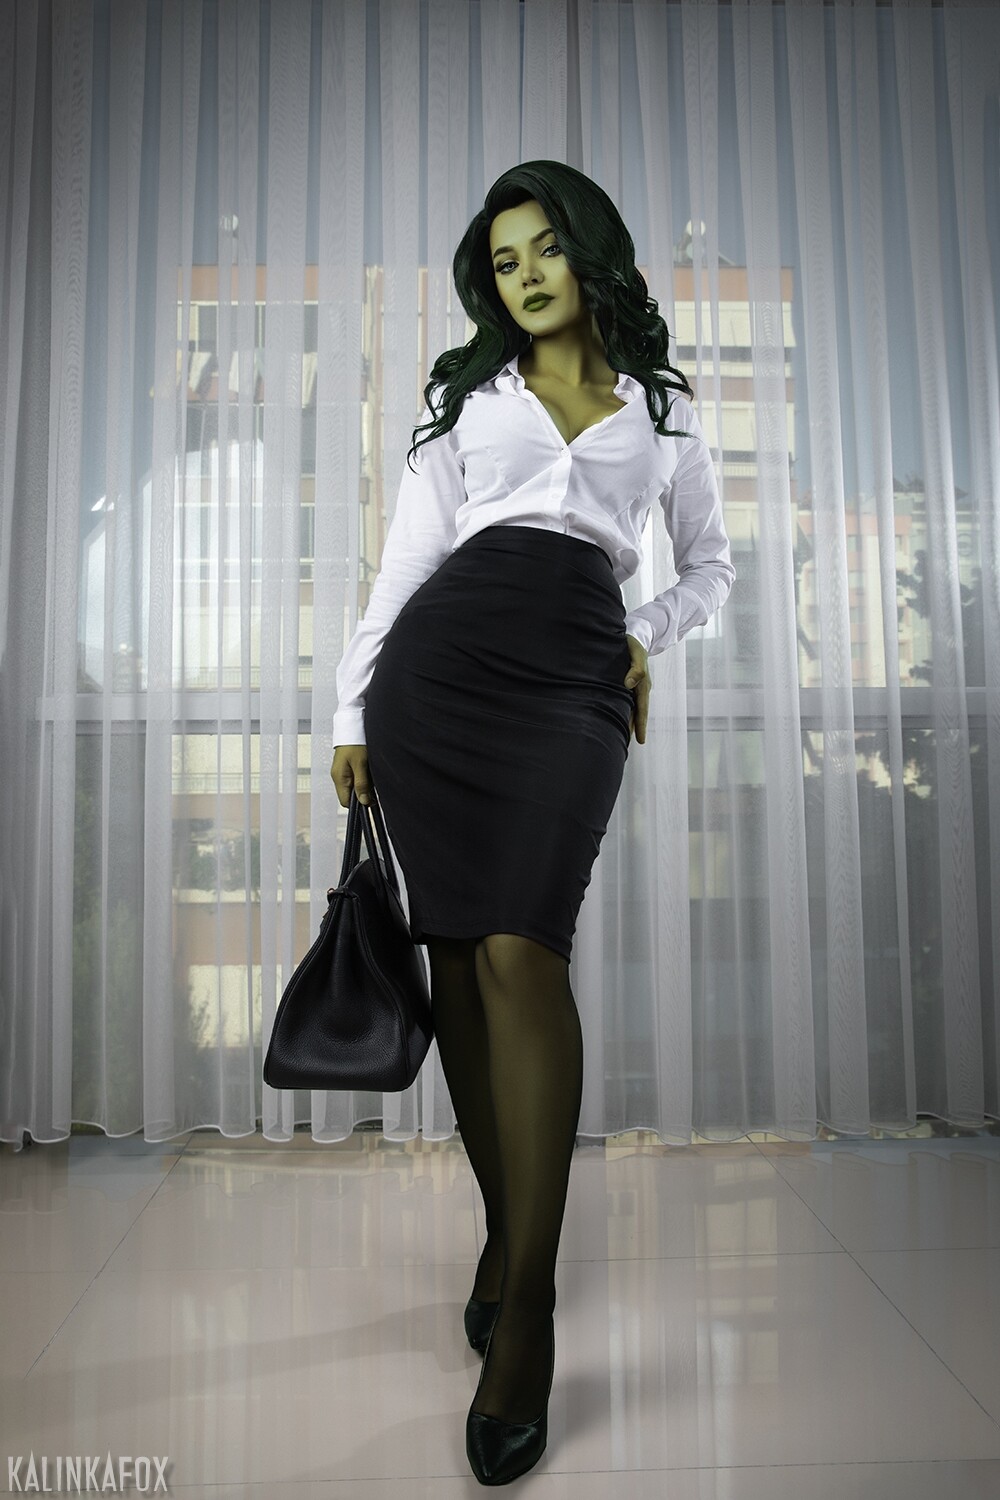 She-Hulk-01_res.jpg